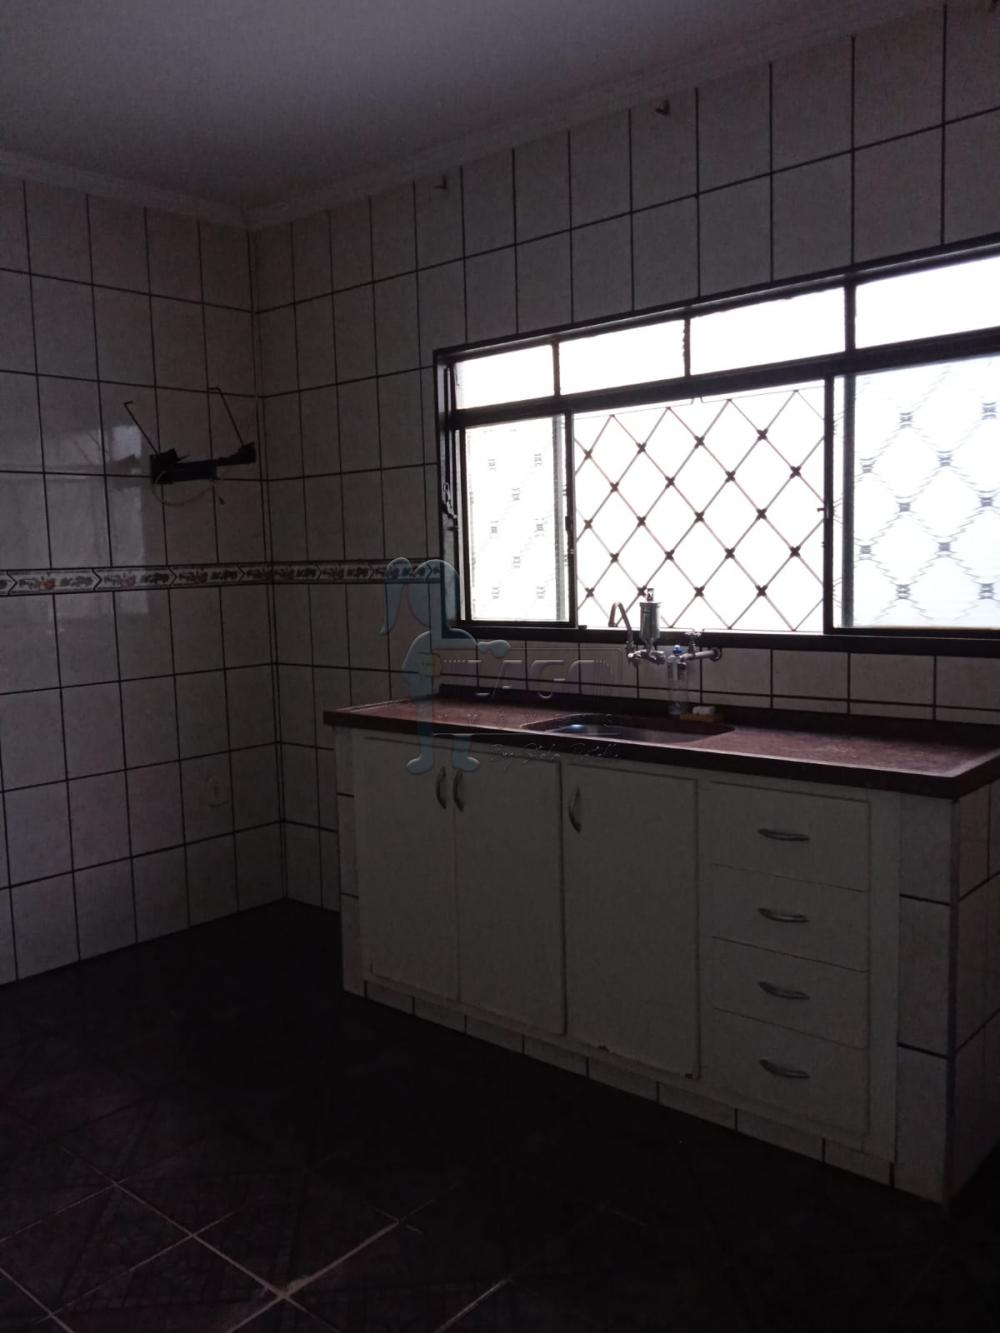 Comprar Casas / Padrão em Ribeirão Preto R$ 320.000,00 - Foto 4